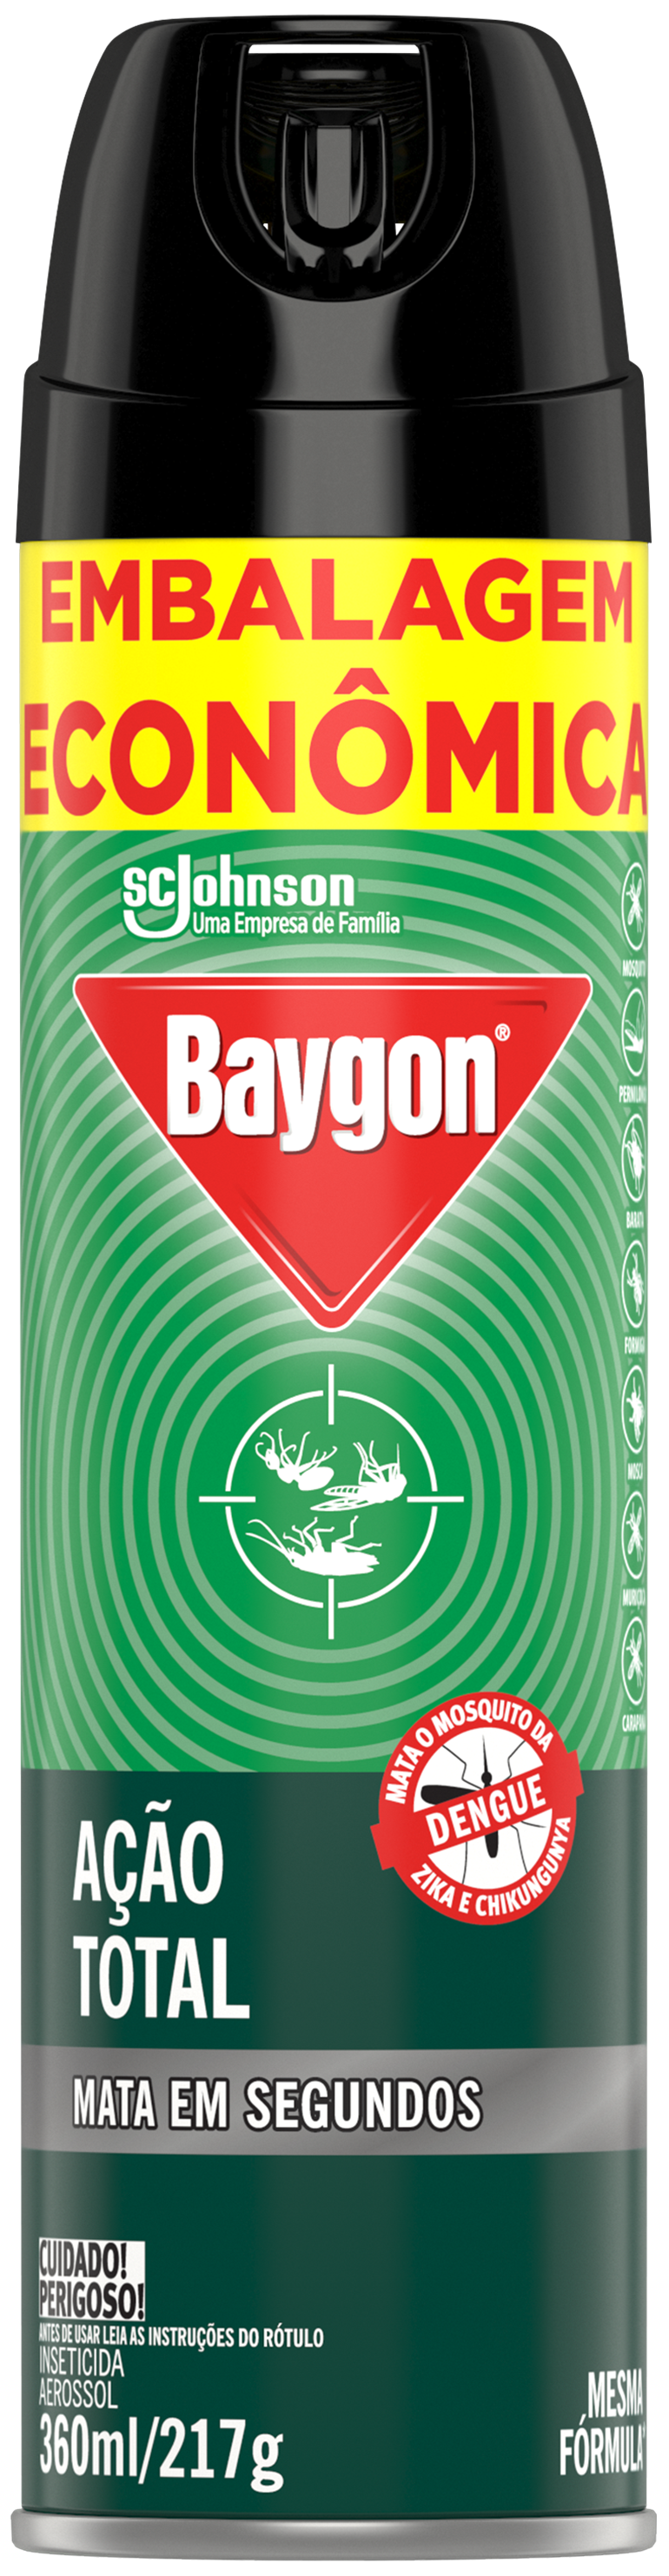 Baygon Accion Total 395ml NO PROMO